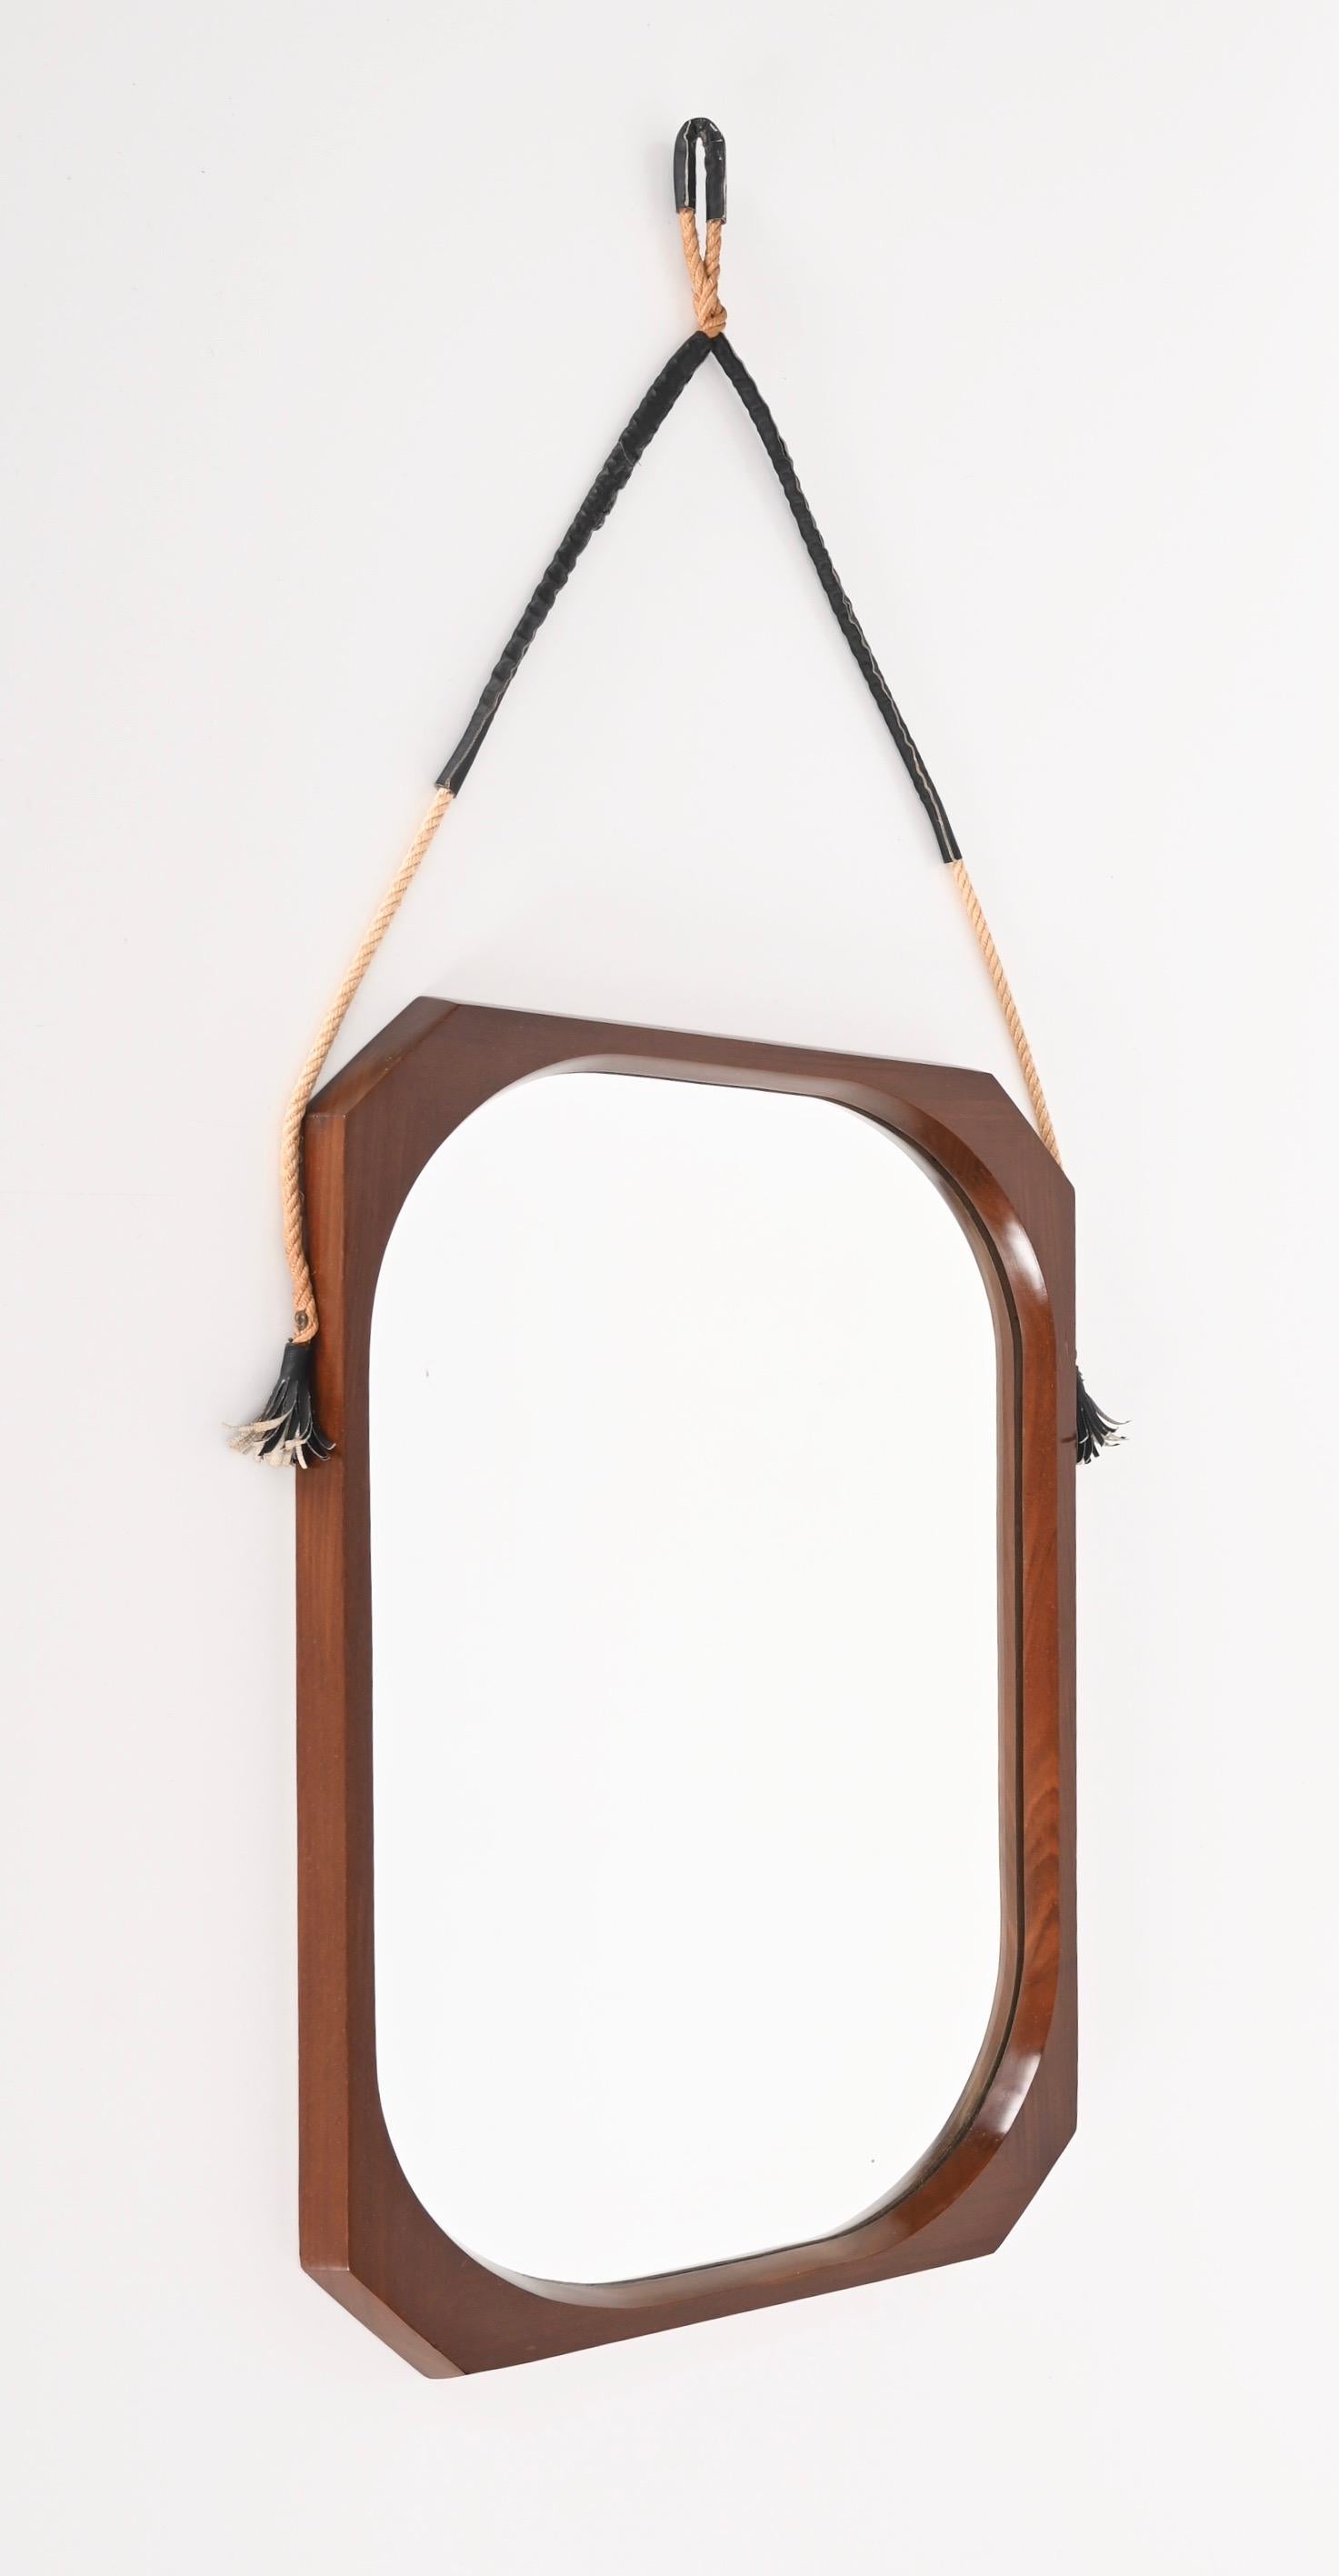 Erstaunlich Mitte des Jahrhunderts Teak, Seil und Leder achteckigen Wand gerahmt Spiegel. Dieses wunderschöne Stück wurde in den 60er Jahren von Domustil in Italien hergestellt.

Der Spiegel verfügt über einen schönen achteckigen Rahmen aus